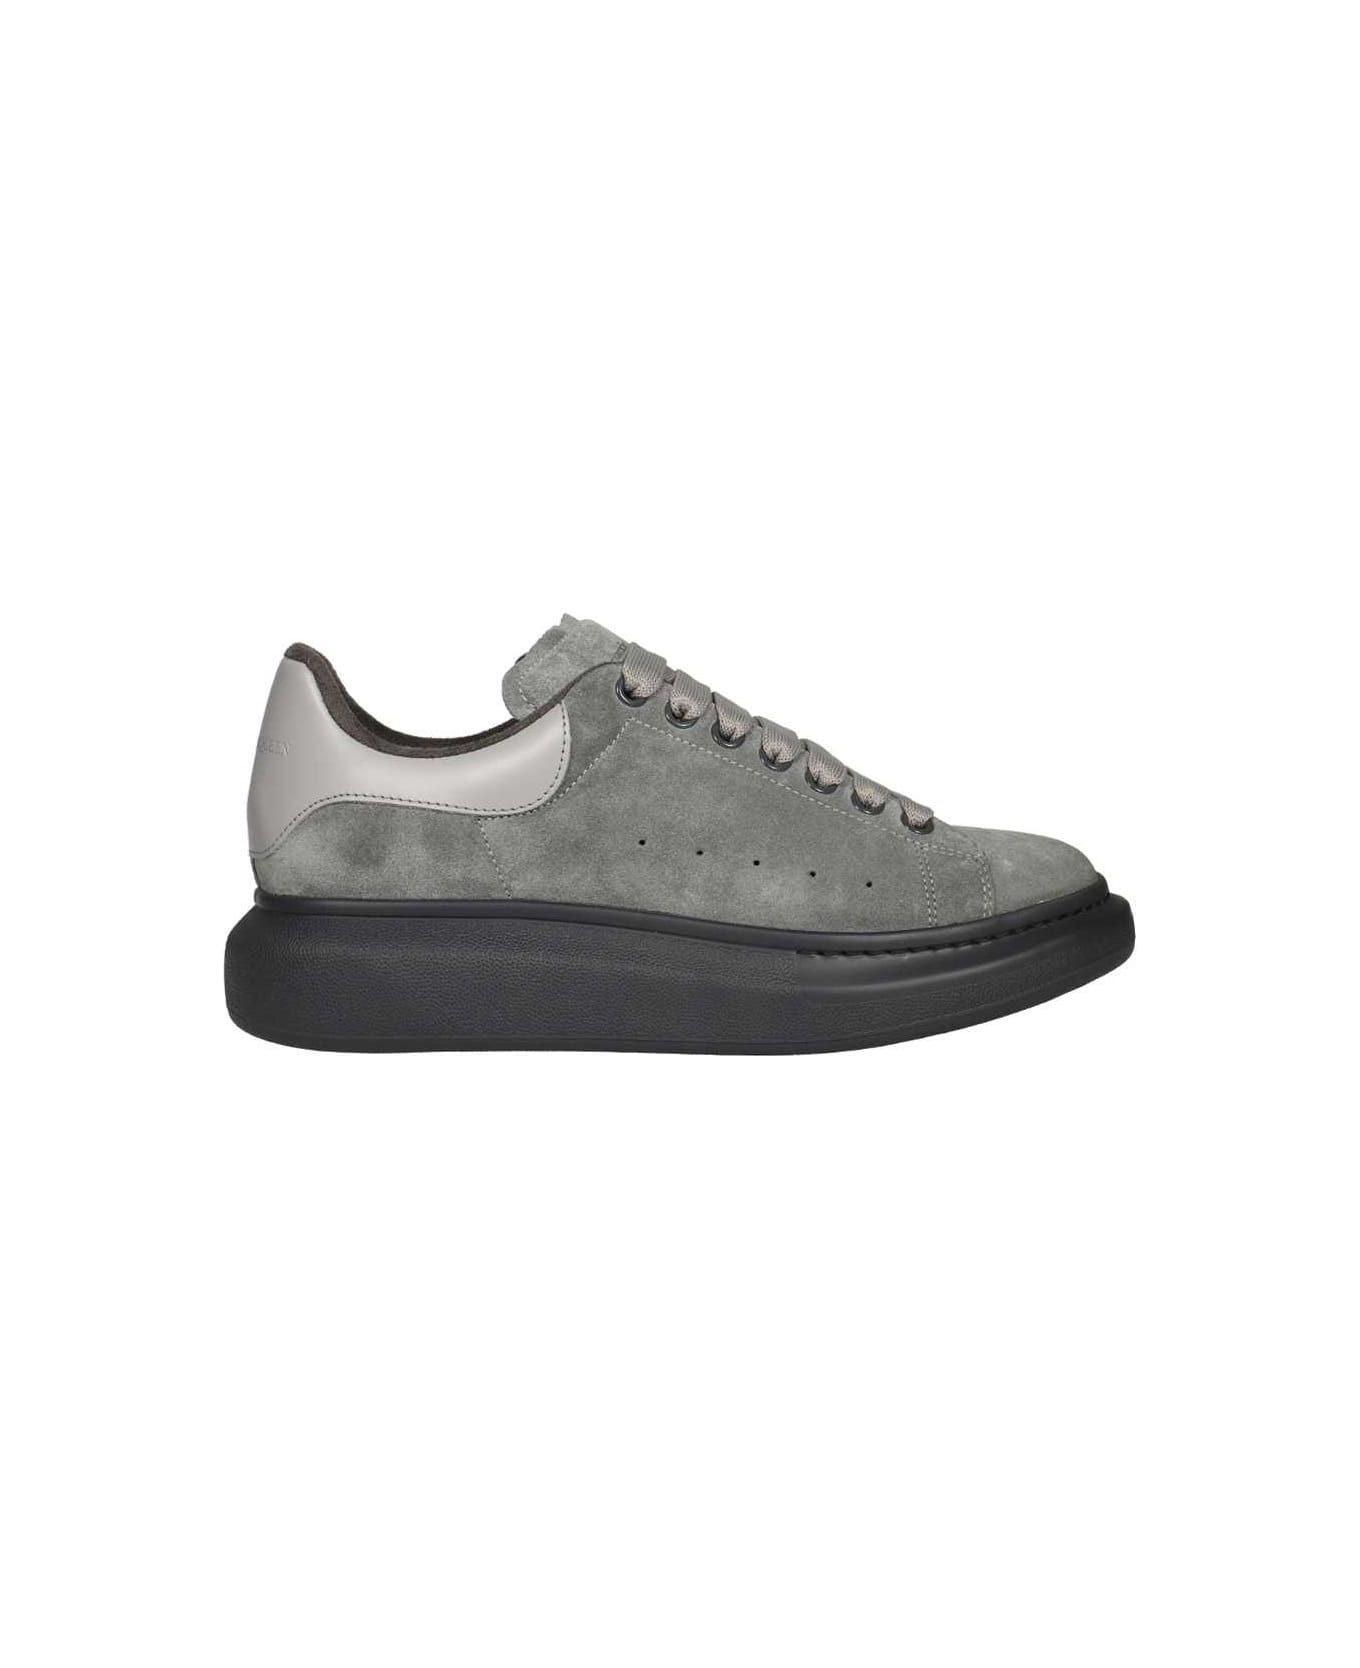 Alexander McQueen Larry Suede Sneakers - grey スニーカー